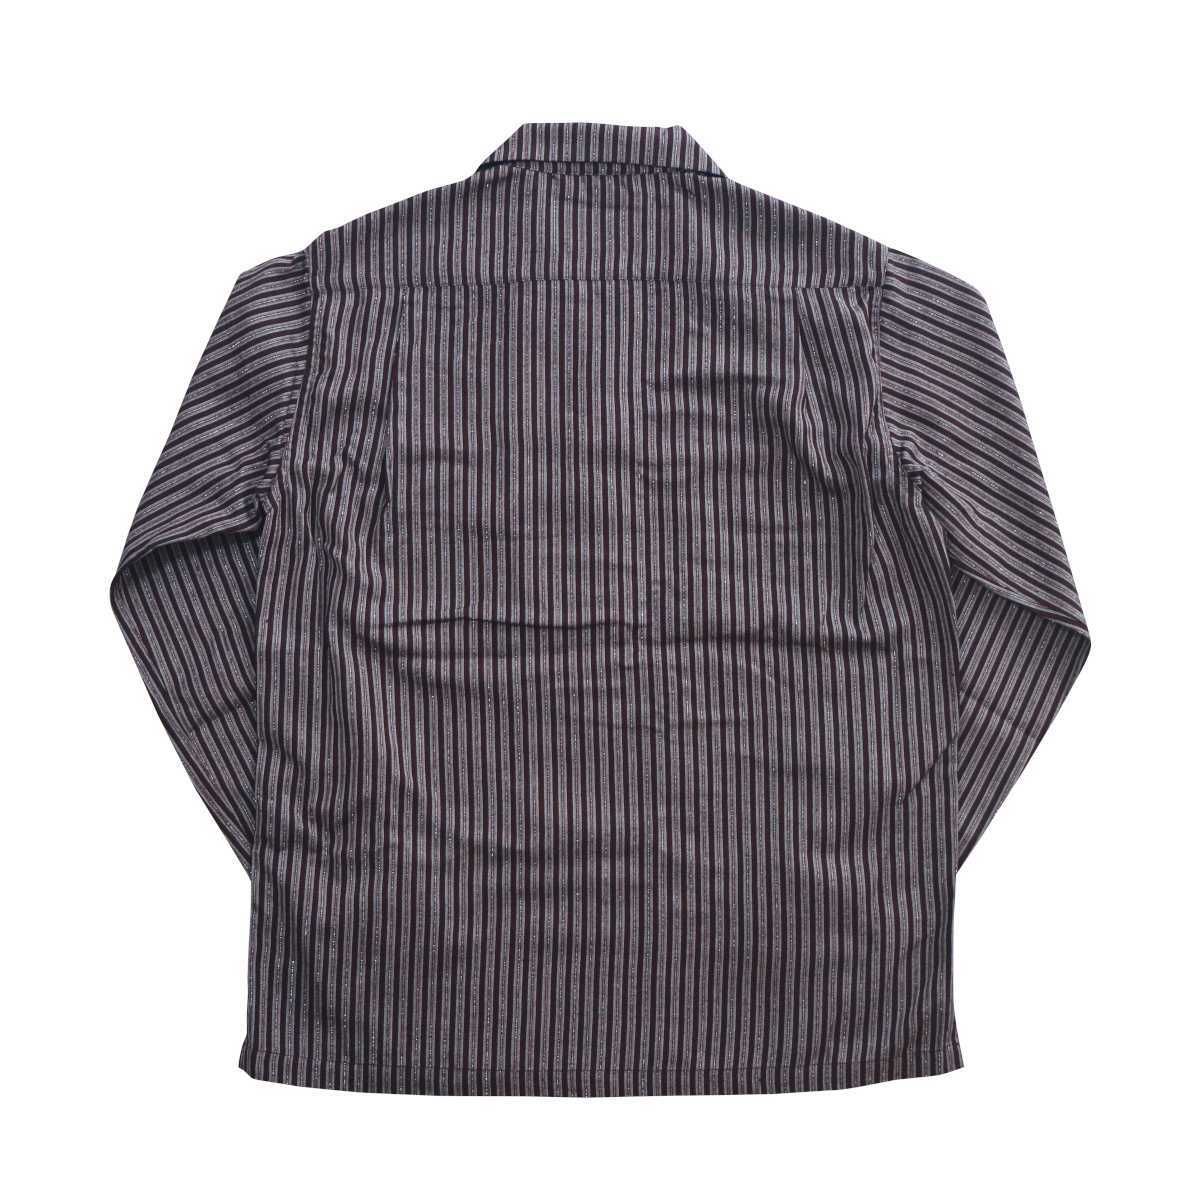 シャツ 長袖 メンズ ロカビリーファッション Lame Stripe Italian Shirts サイズL ブランド SAVOY CLOTHING_画像3